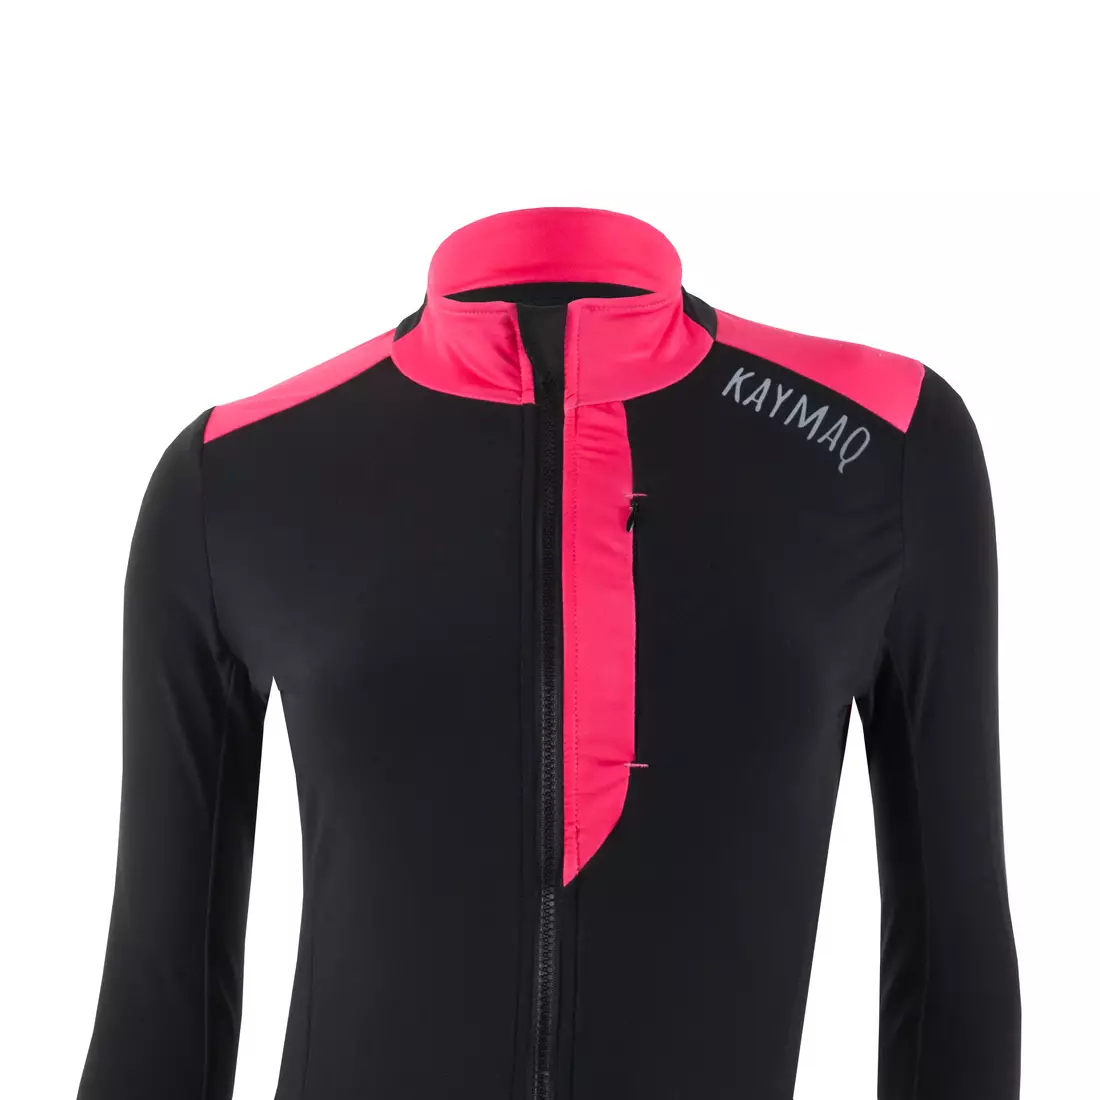 KAYMAQ KYQLSW-100 dámsky cyklistický dres čierna-ružová